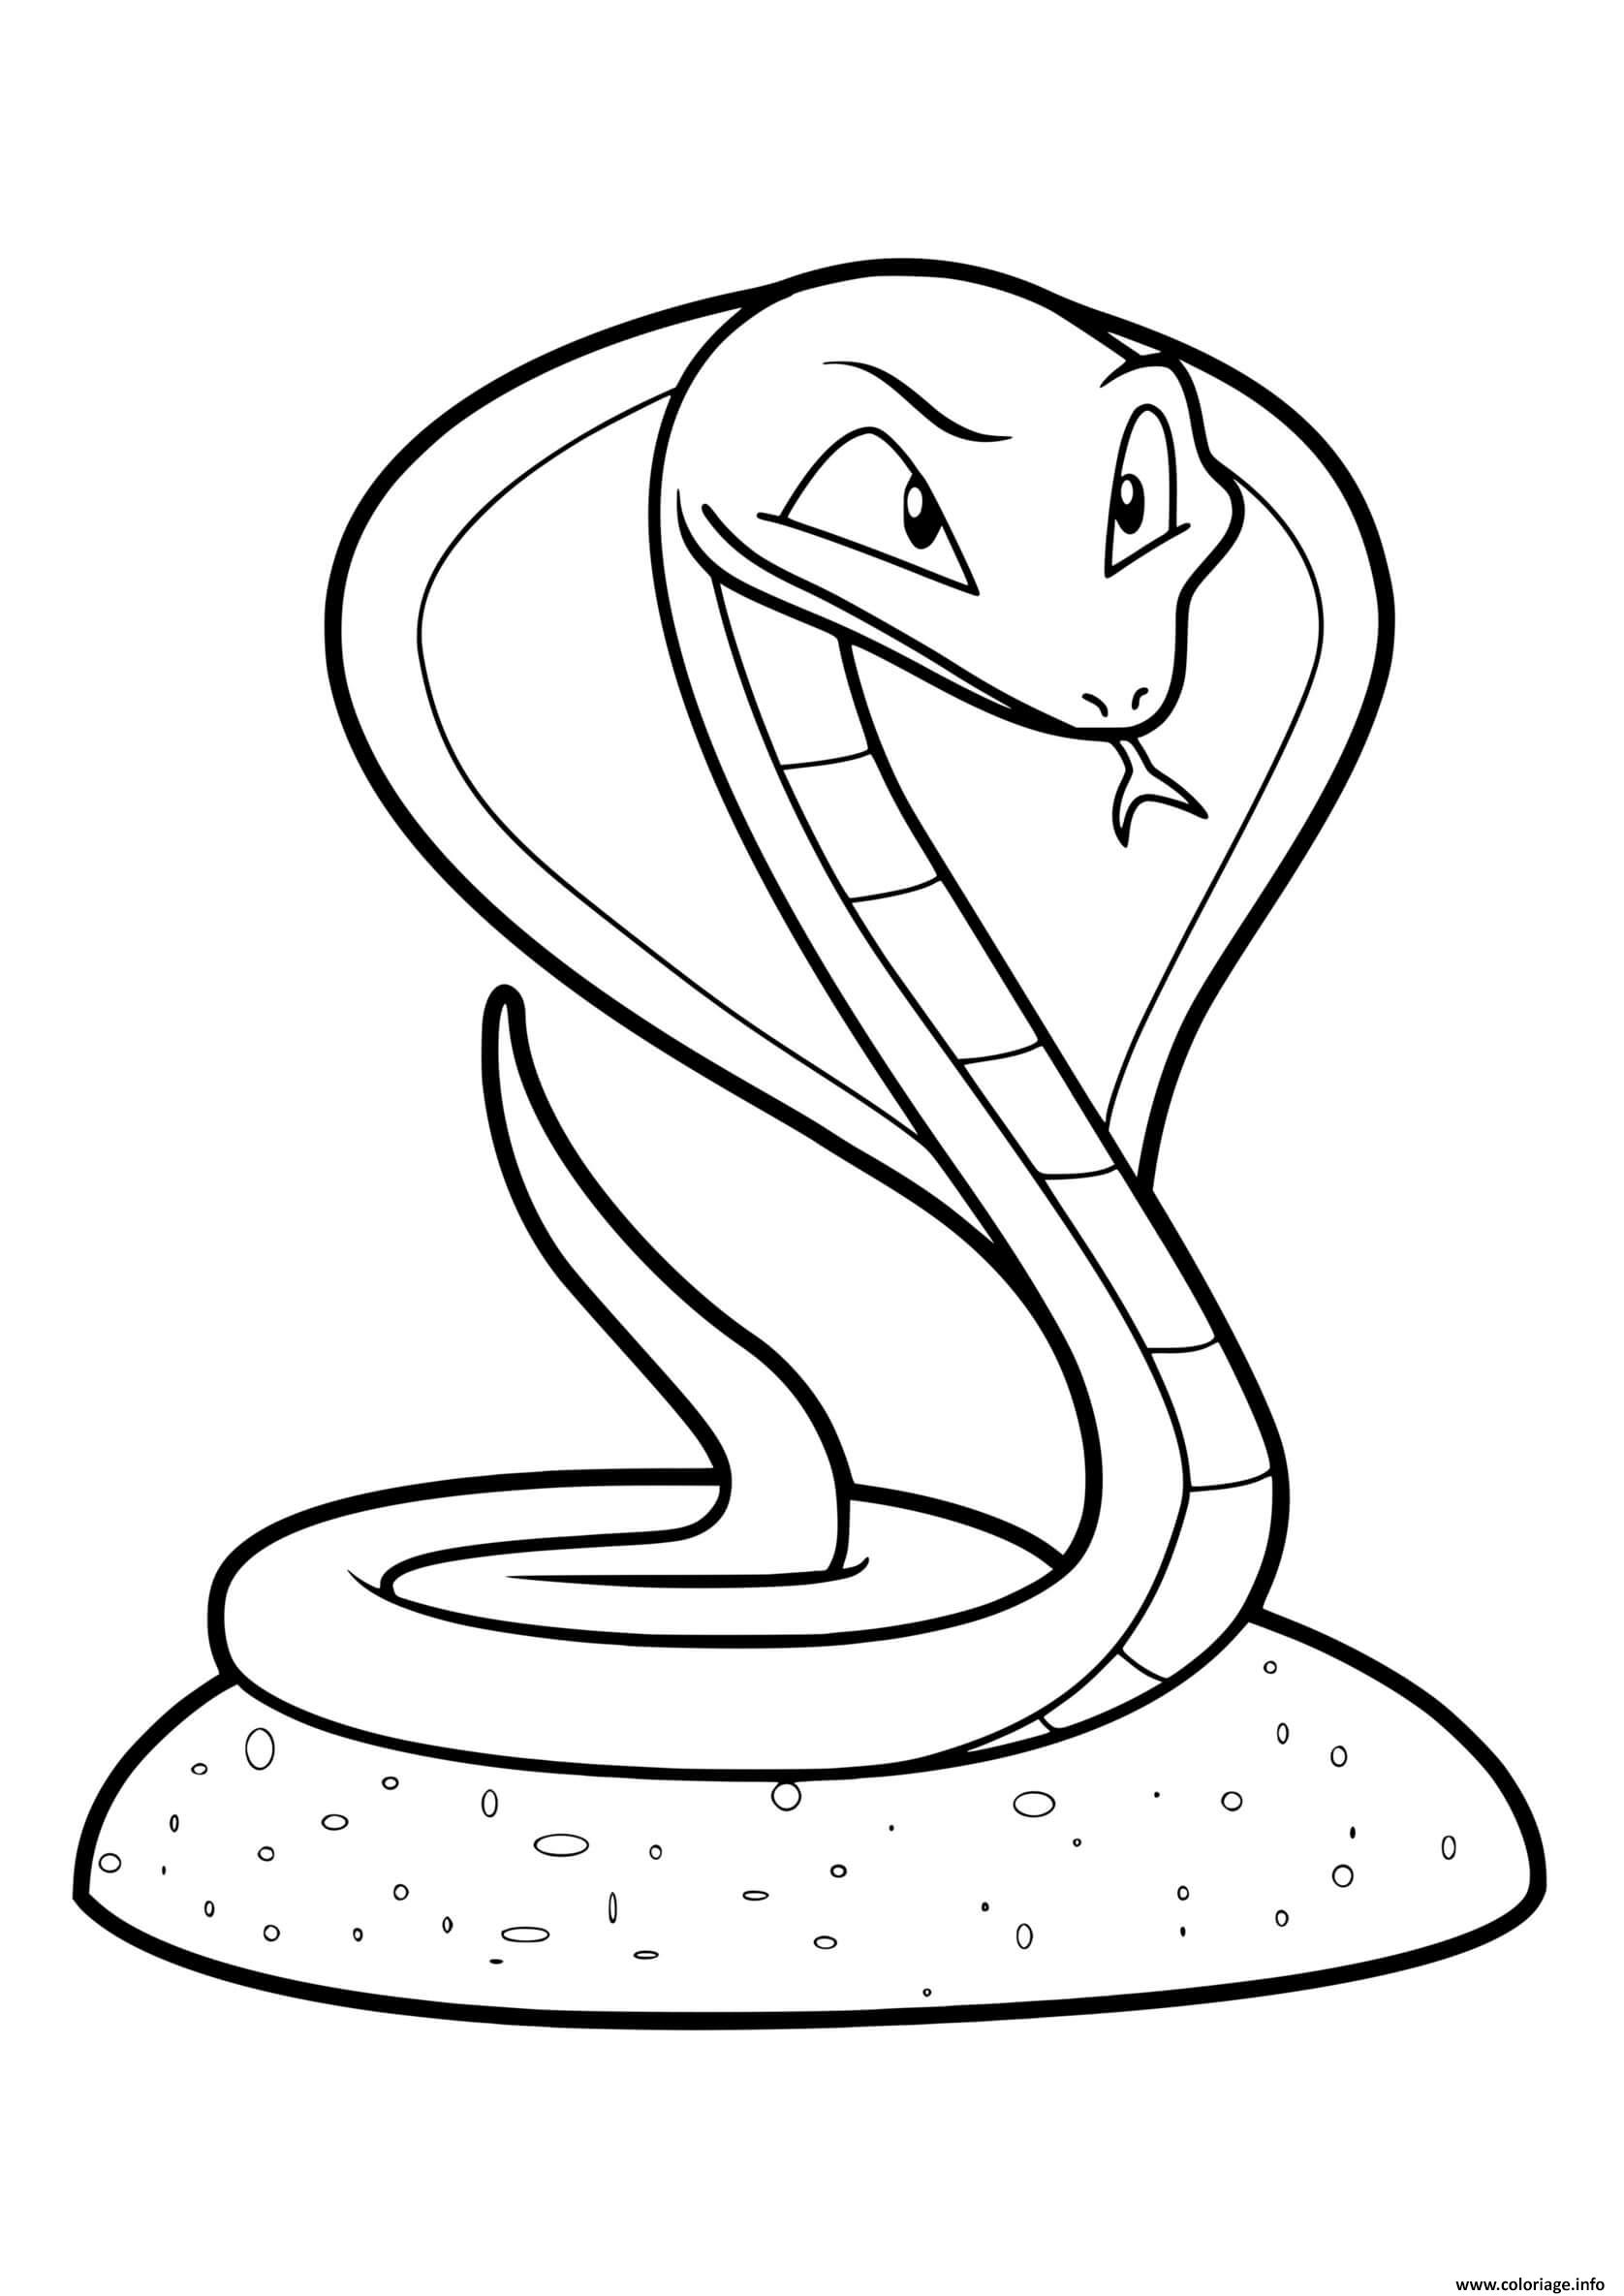 Dessin serpent python Coloriage Gratuit à Imprimer